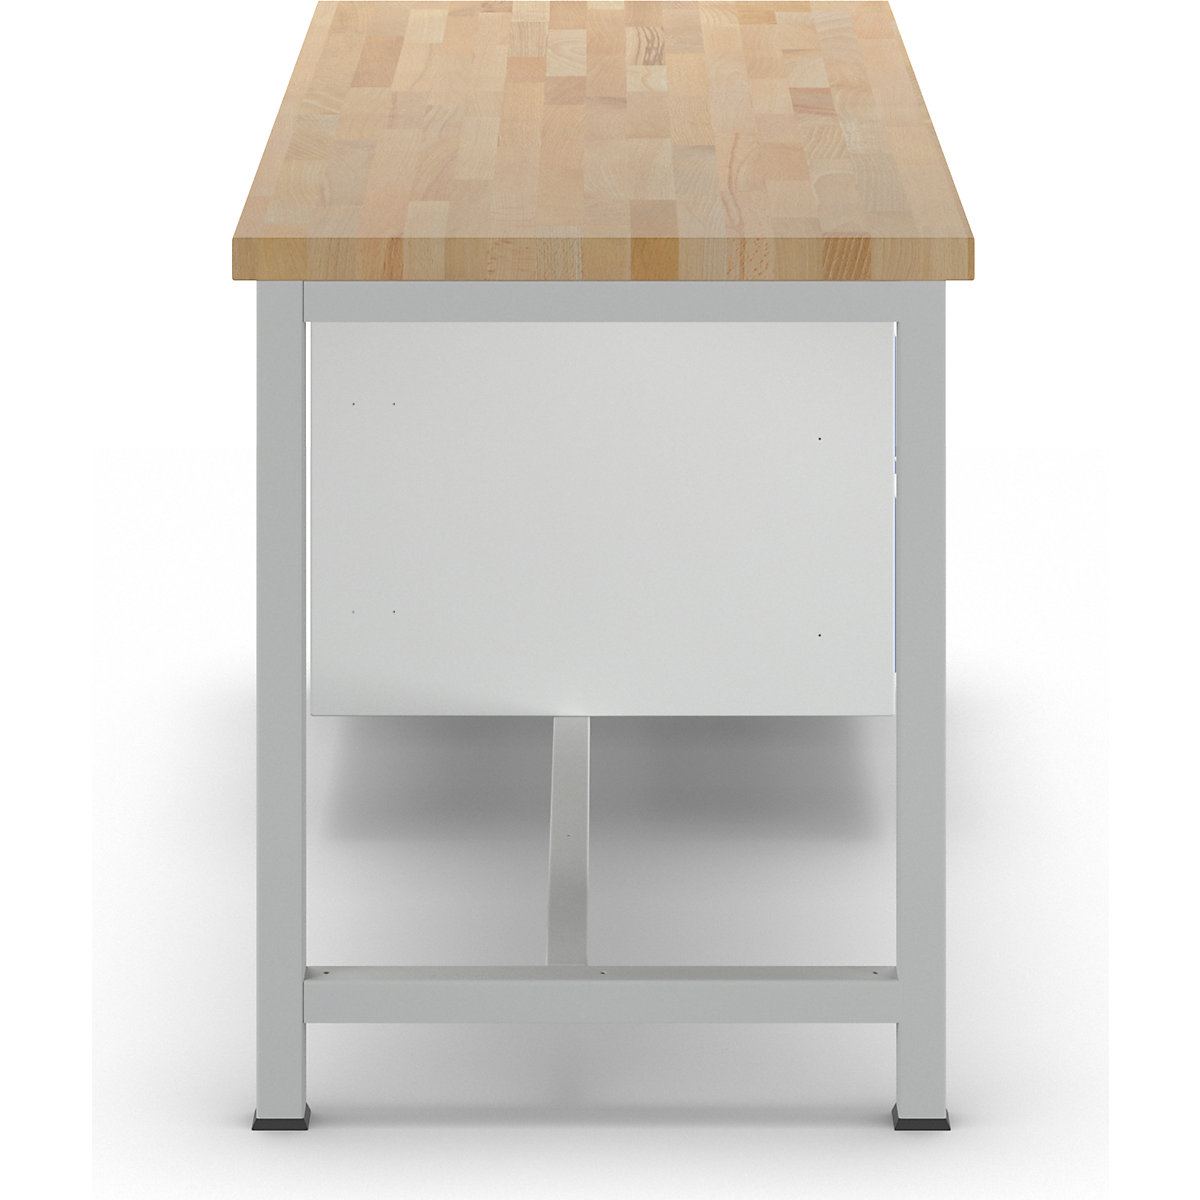 Stół warsztatowy, konstrukcja ramowa – RAU (Zdjęcie produktu 42)-41